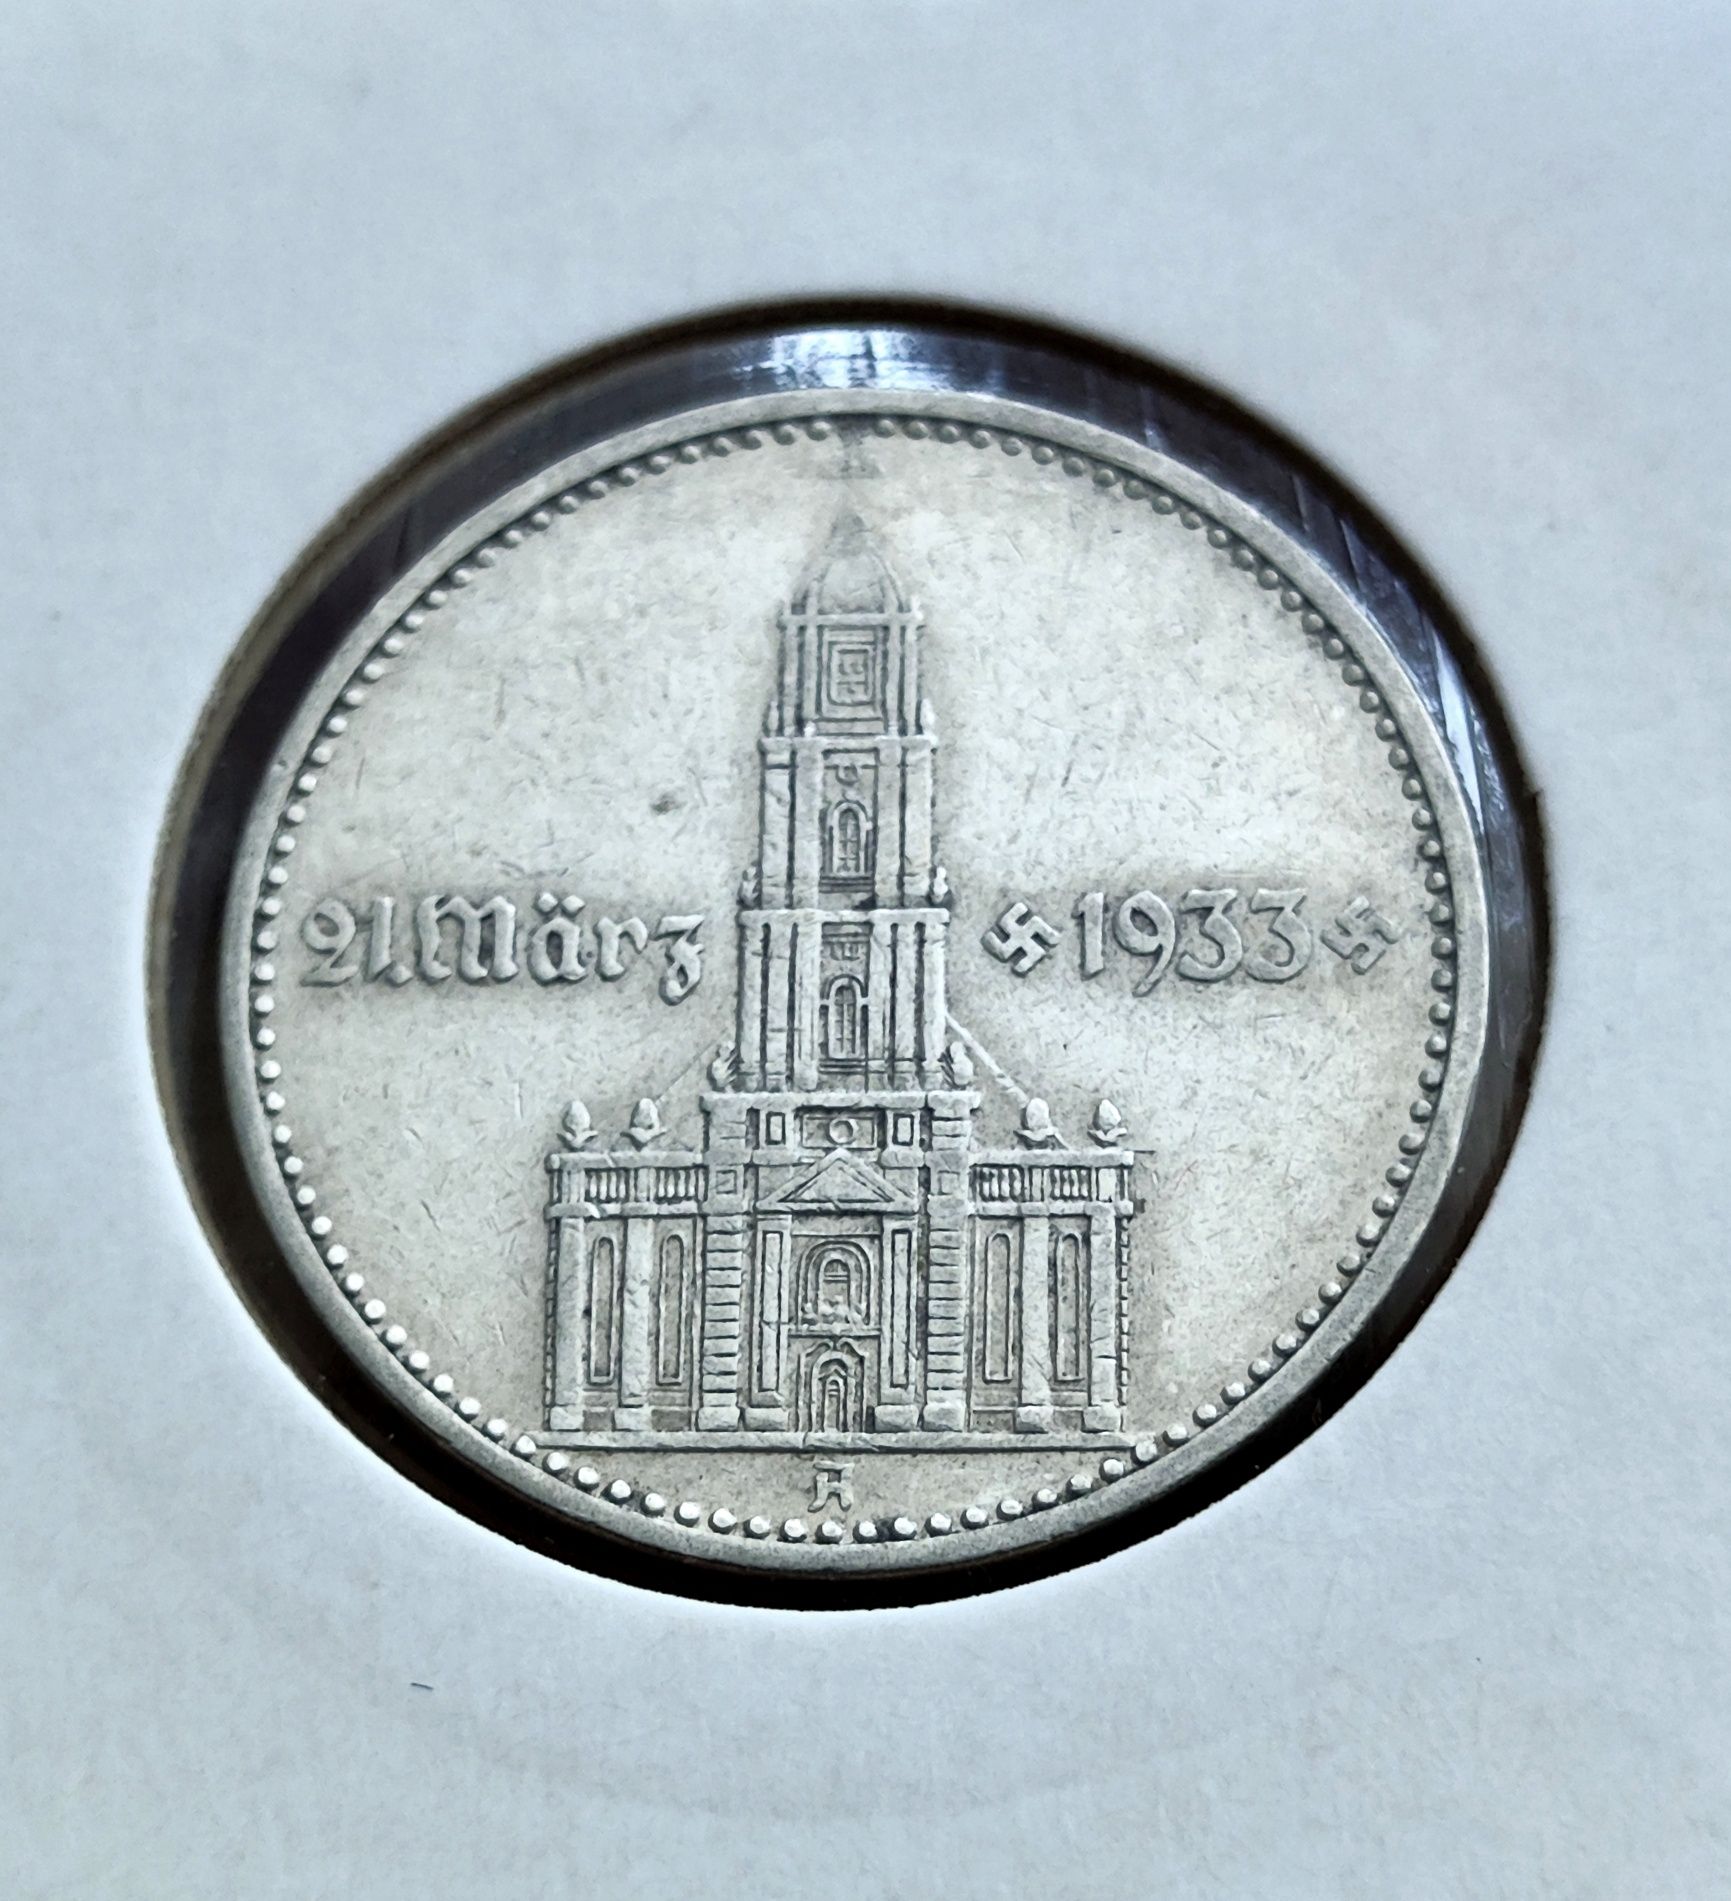 2 марки 1934 року. Кирха.Німеччина